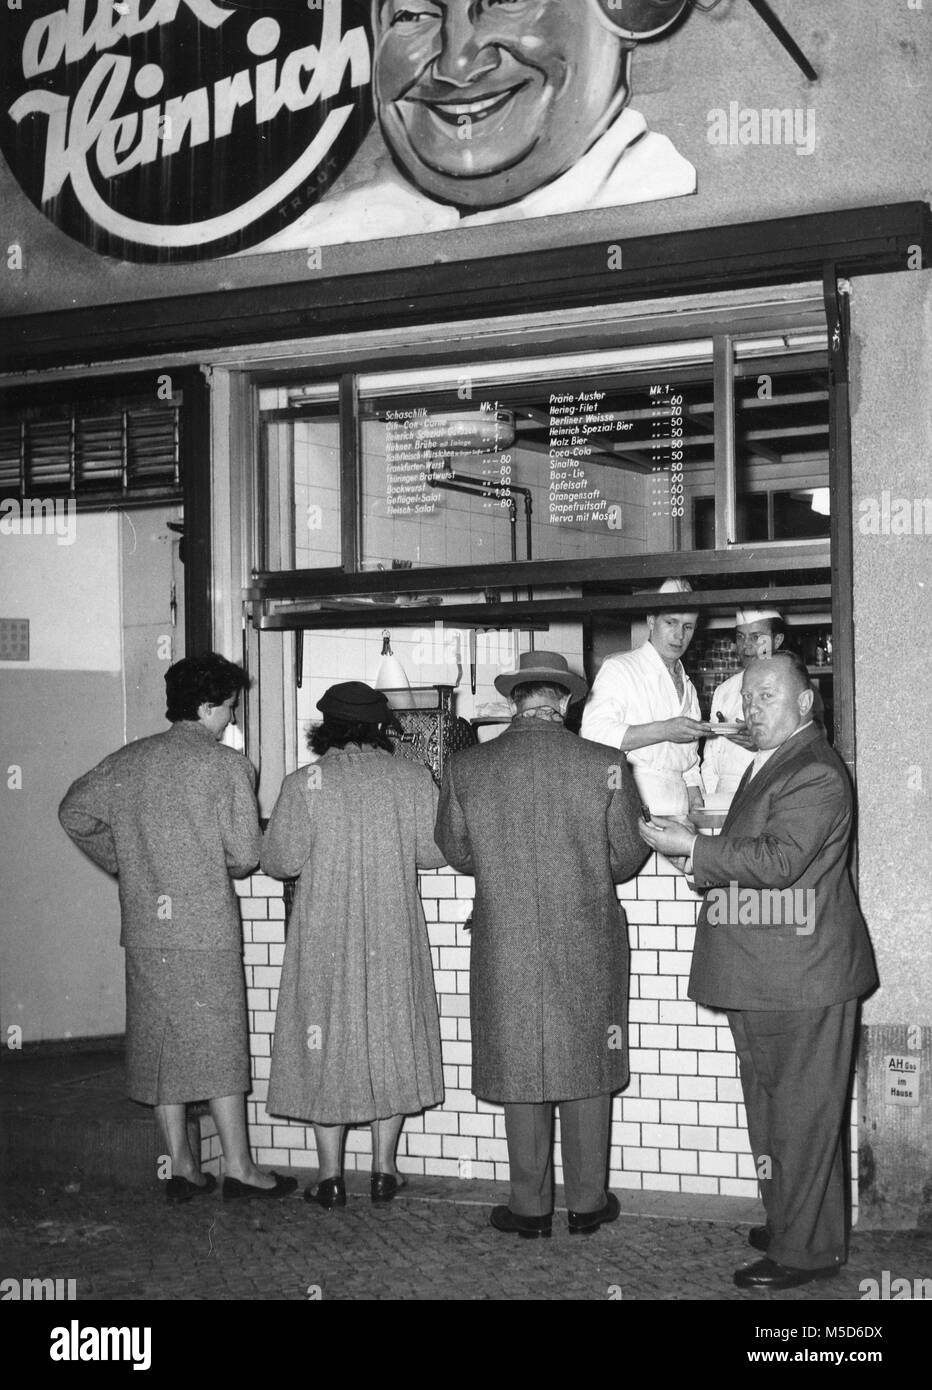 Les hommes et les femmes manger des saucisses, 1960, Berlin, Allemagne Banque D'Images